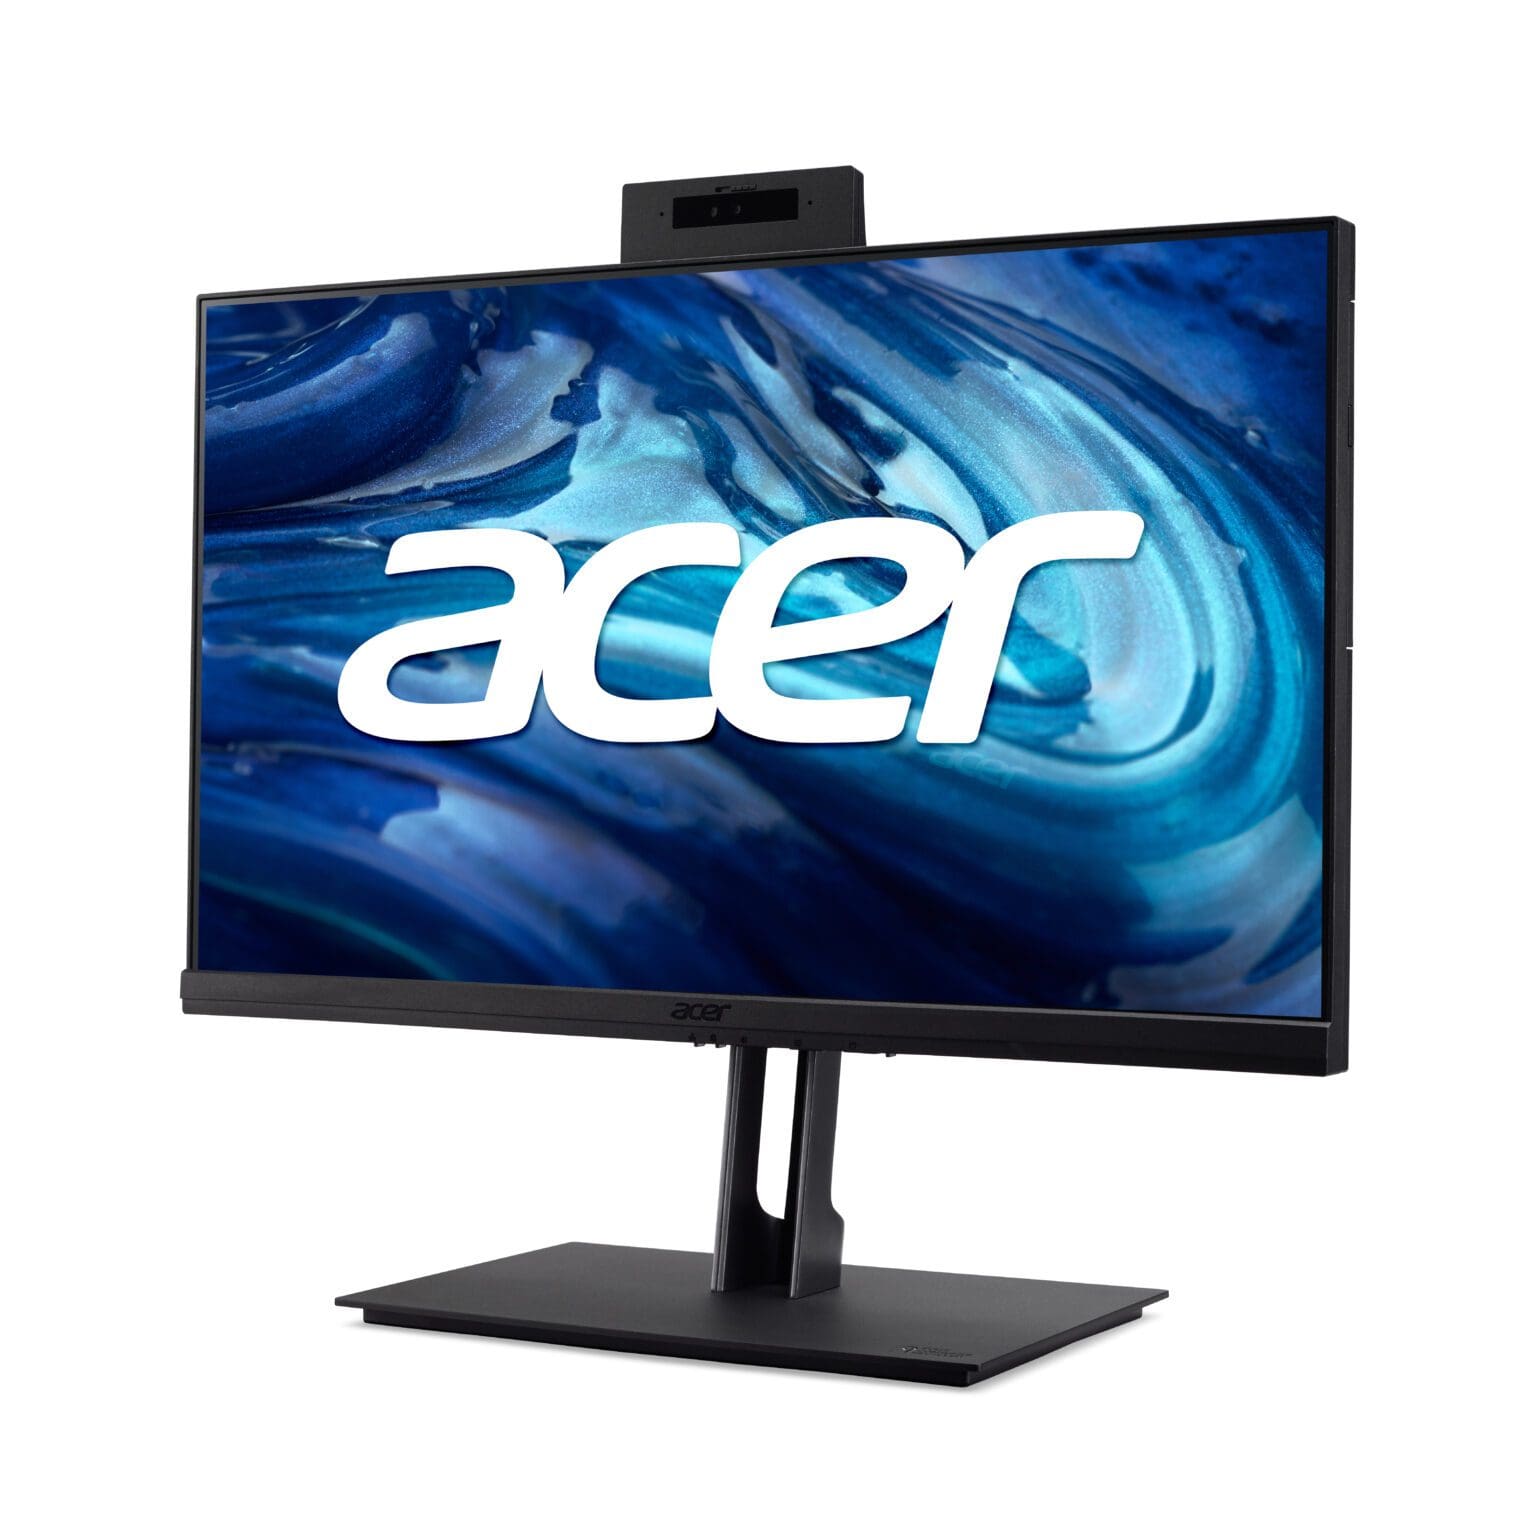 La familia Vero de Acer crece con nuevas laptops, desktop, monitores, proyectores y periféricos 5